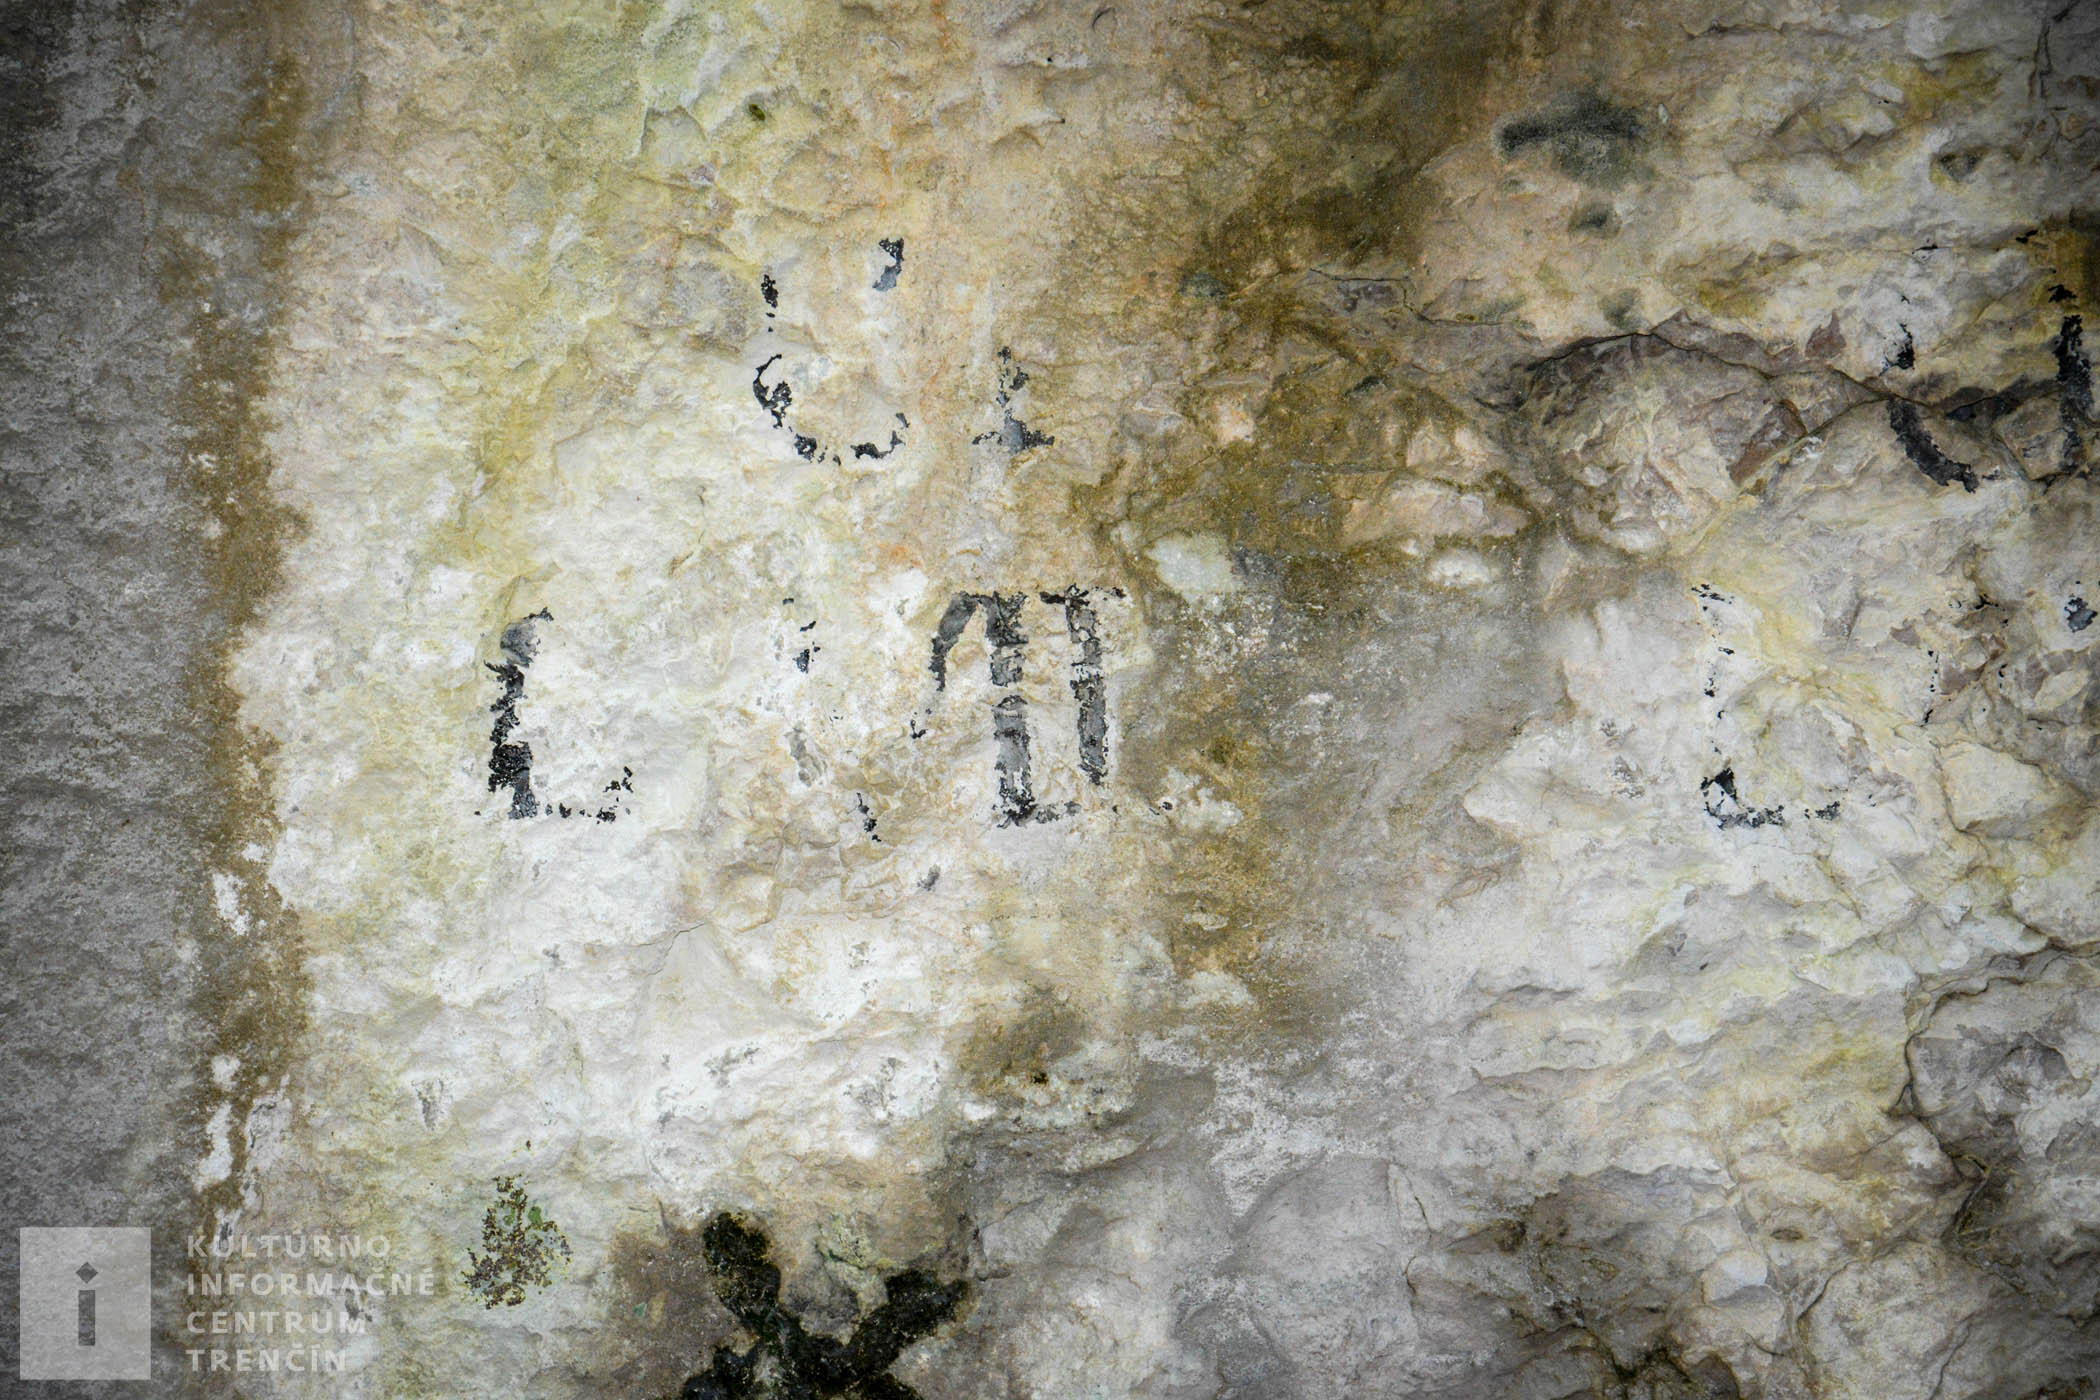 Dobre sa v jaskyni poobzerajte po stenách. Na niektorých miestach zbadáte rôzne nápisy. Väčšina z nich pochádza zo začiatku 20. storočia.